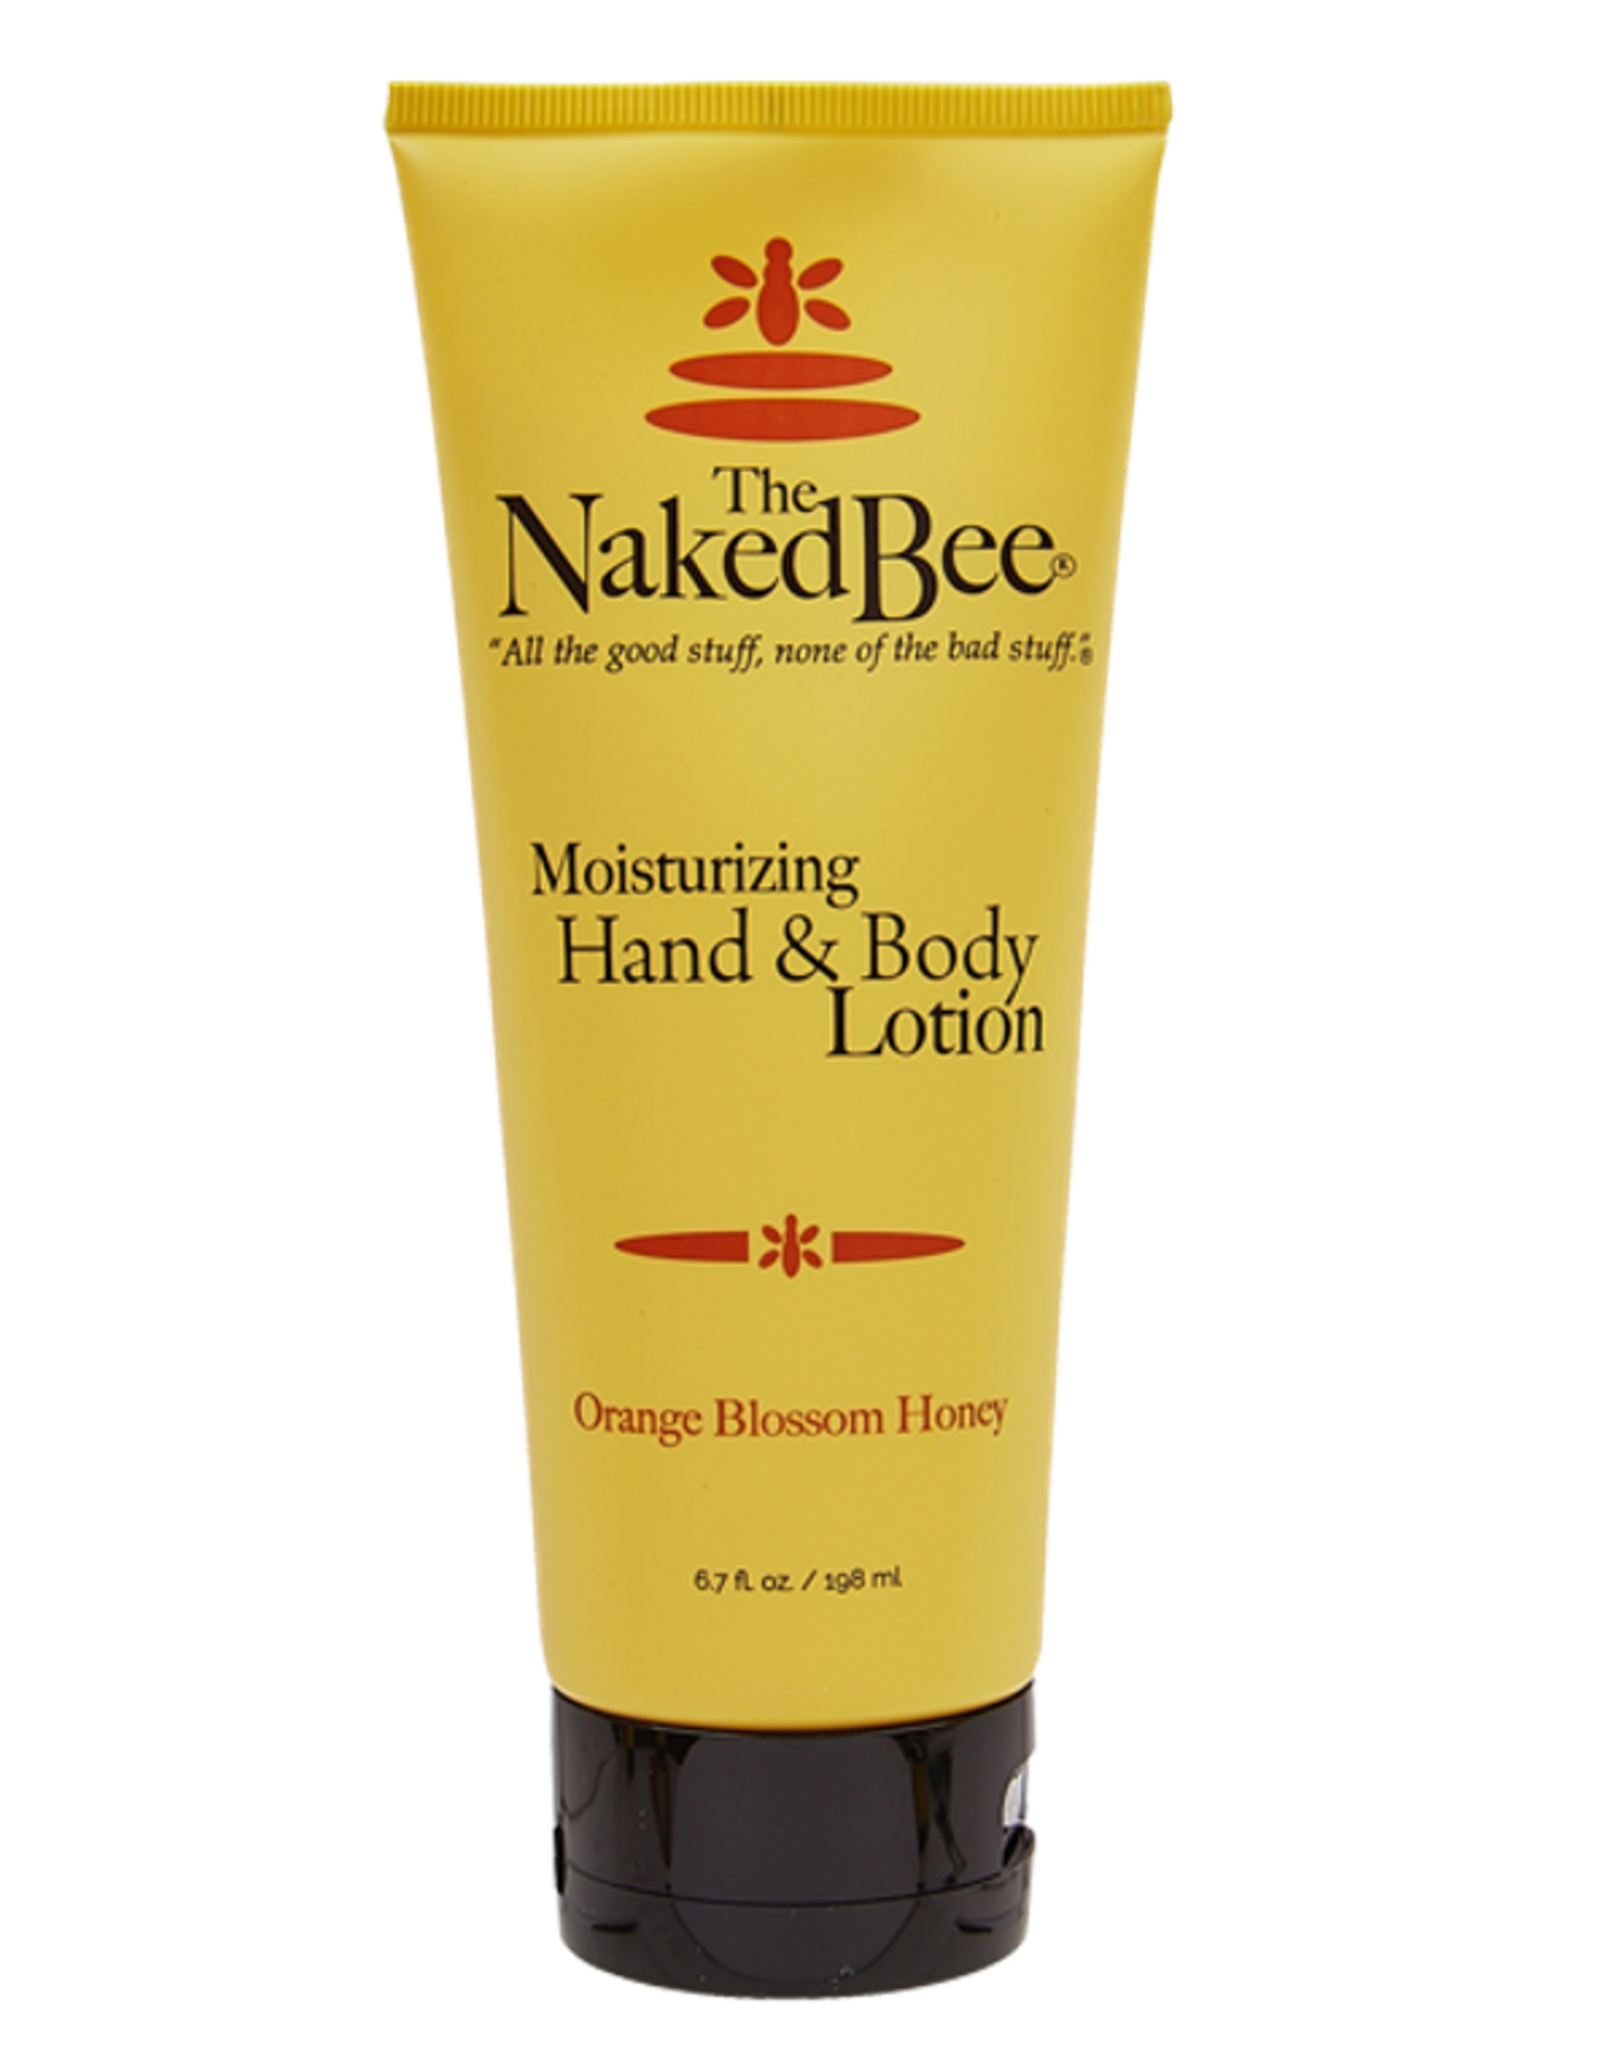 Naked Bee Moisturizing Hand & Body Lotion - Orange Blossom